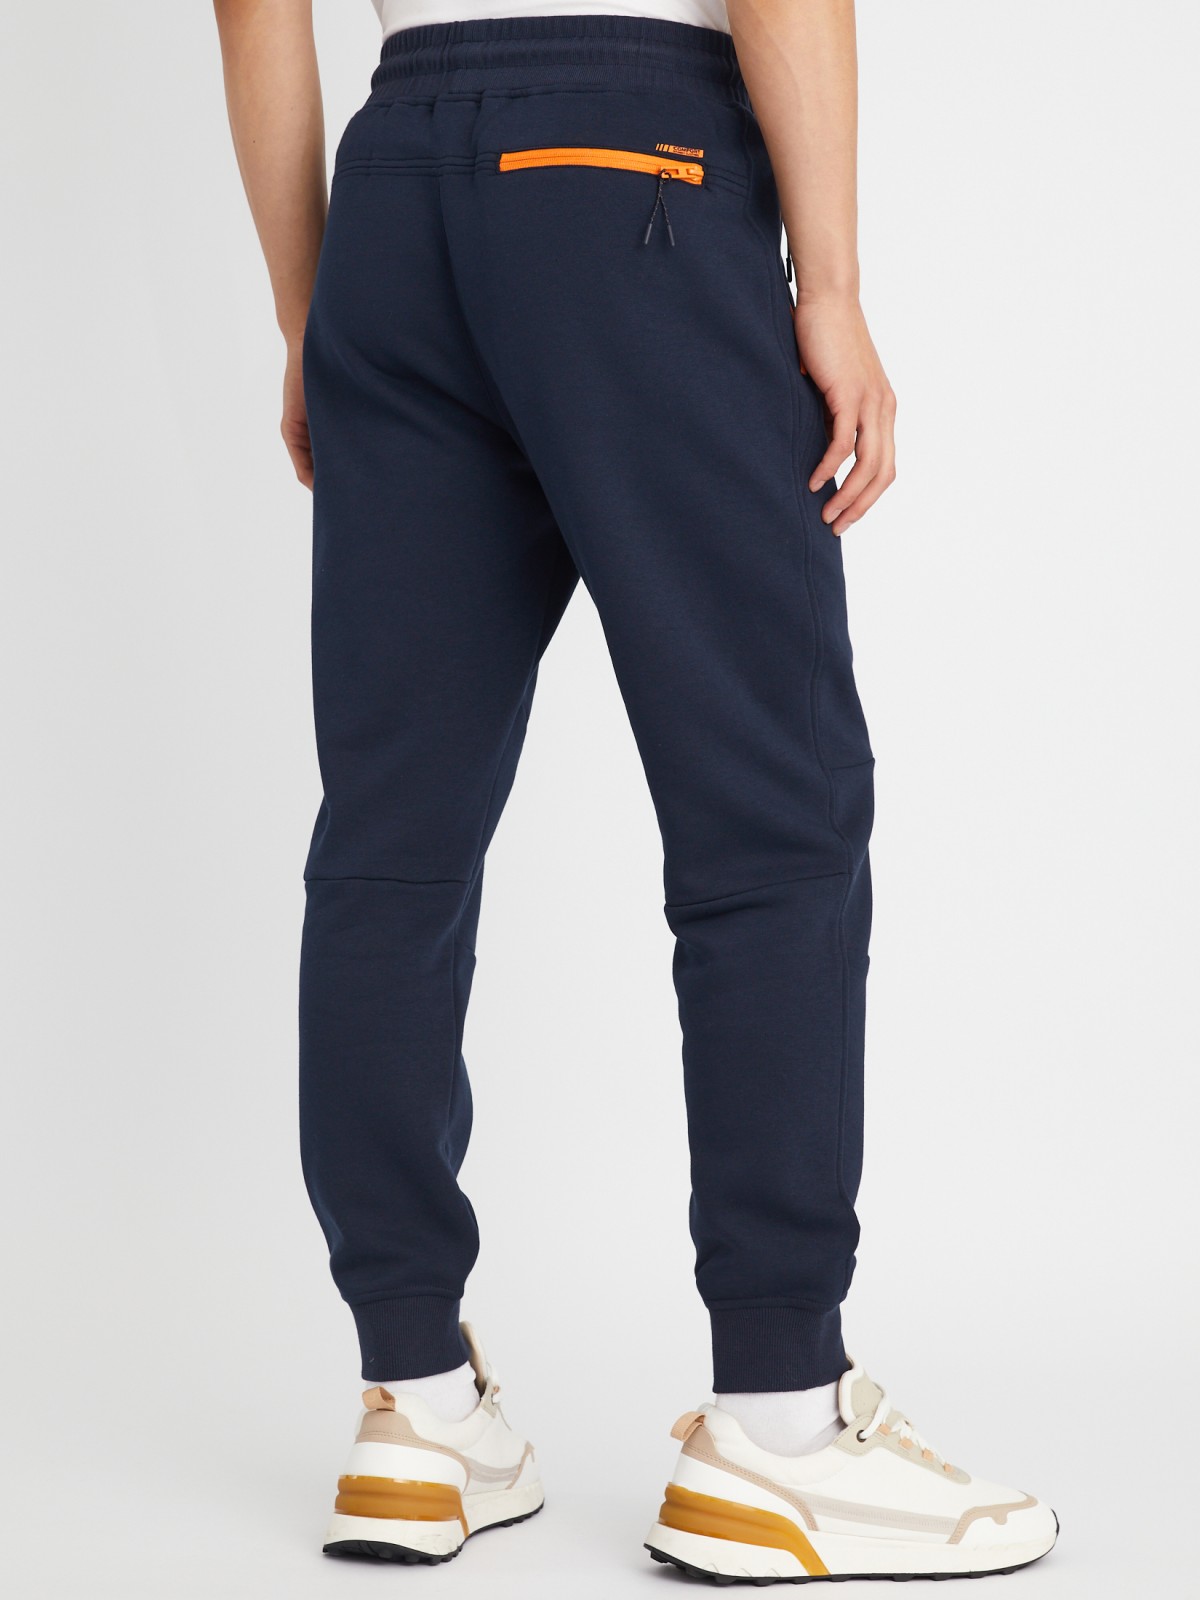 Утеплённые трикотажные брюки-джоггеры в спортивном стиле zolla 21333762F033, цвет синий, размер L - фото 5